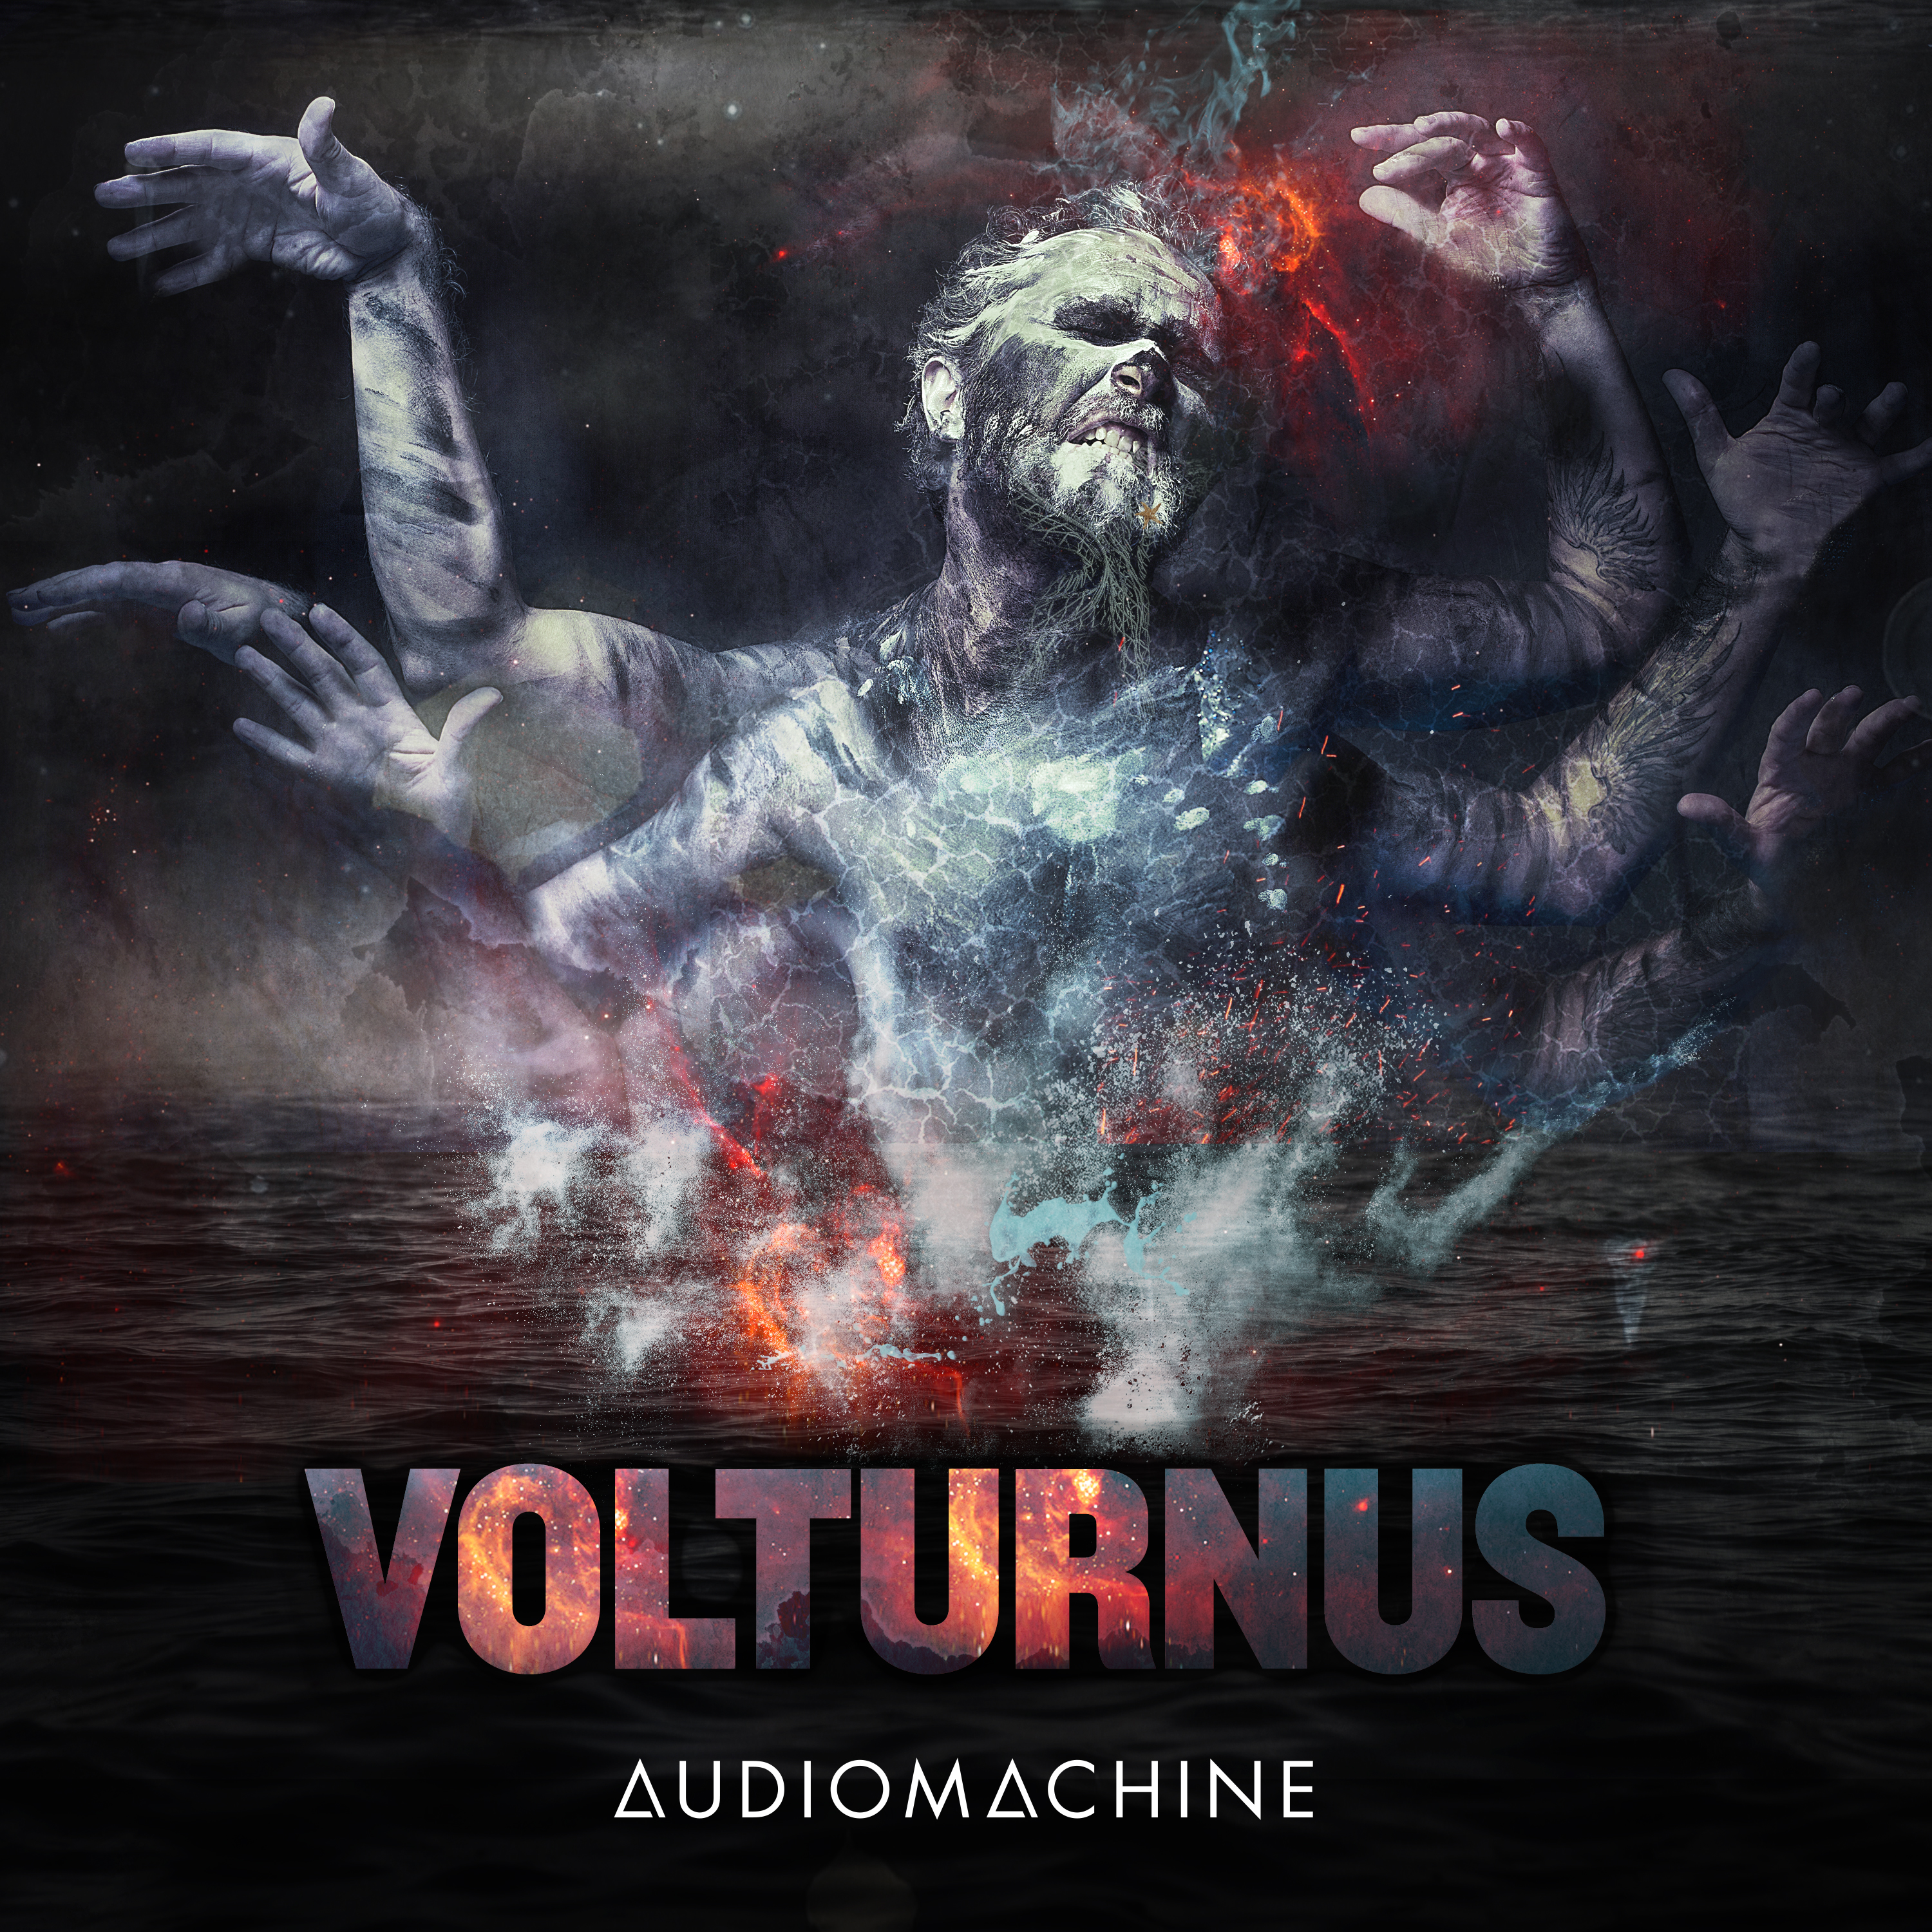 Volturnus